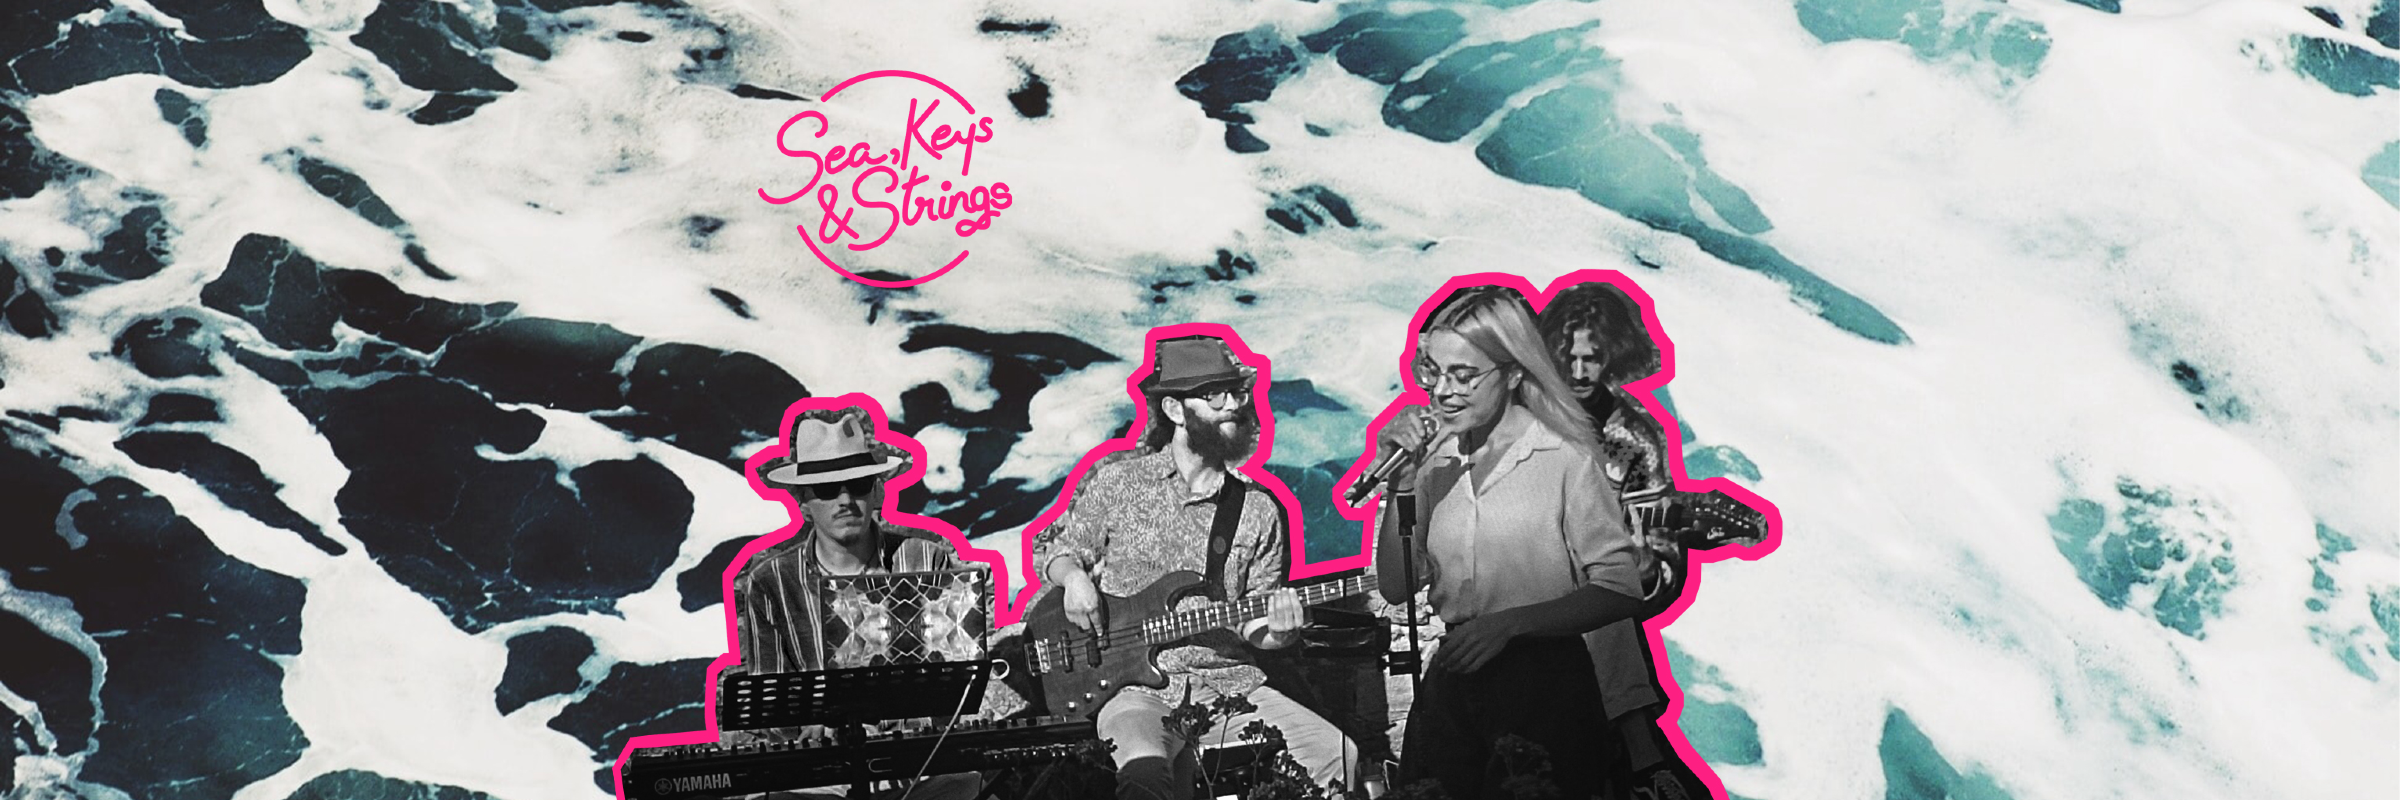 Sea, Keys & Strings, groupe de musique Chanteur en représentation à Hauts de Seine - photo de couverture